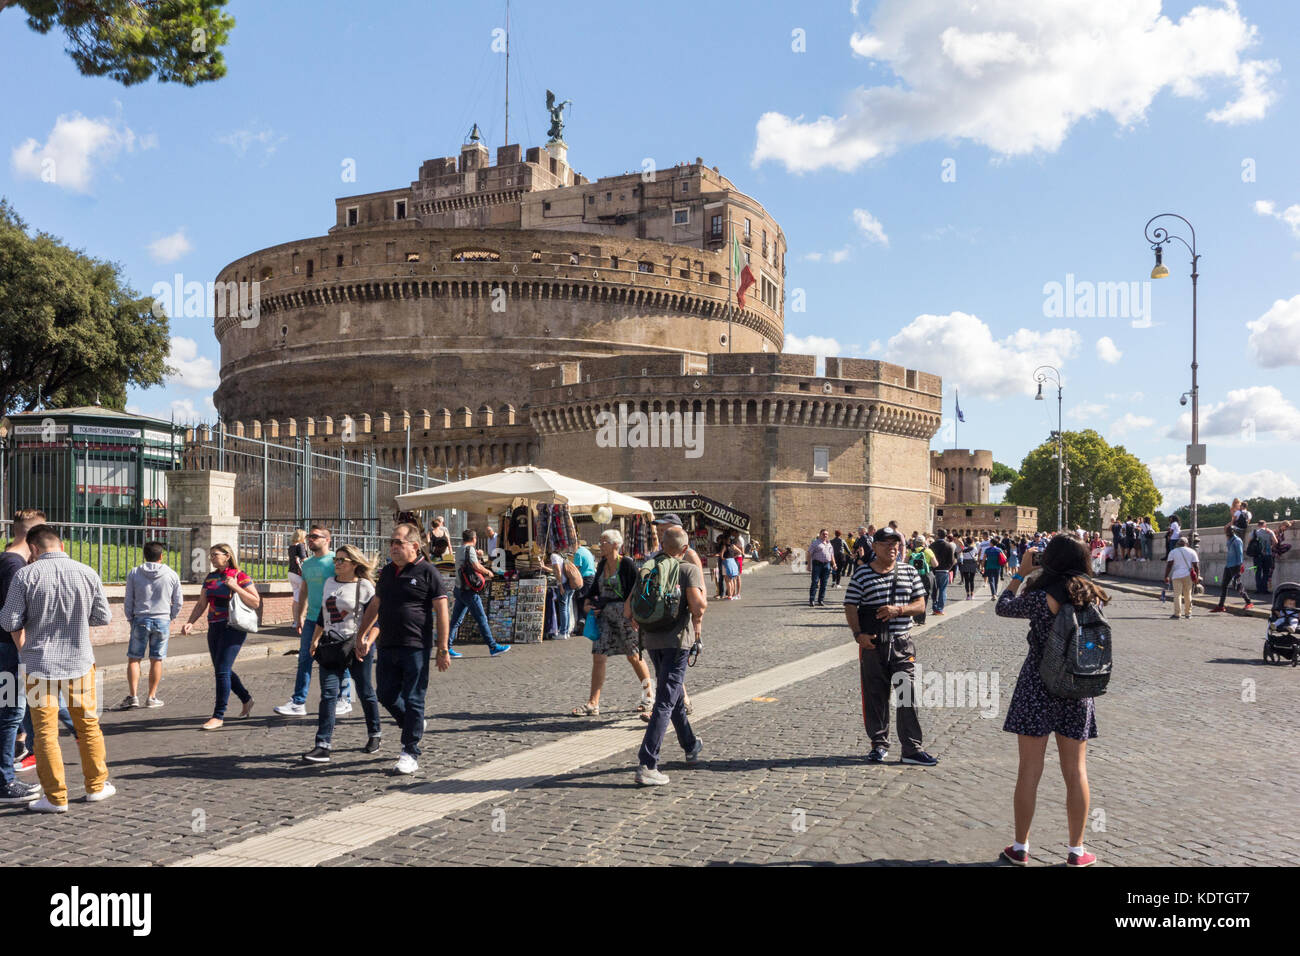 Los turistas tomando fotos fuera del Castel Sant'Angelo, Roma, Italia Foto de stock